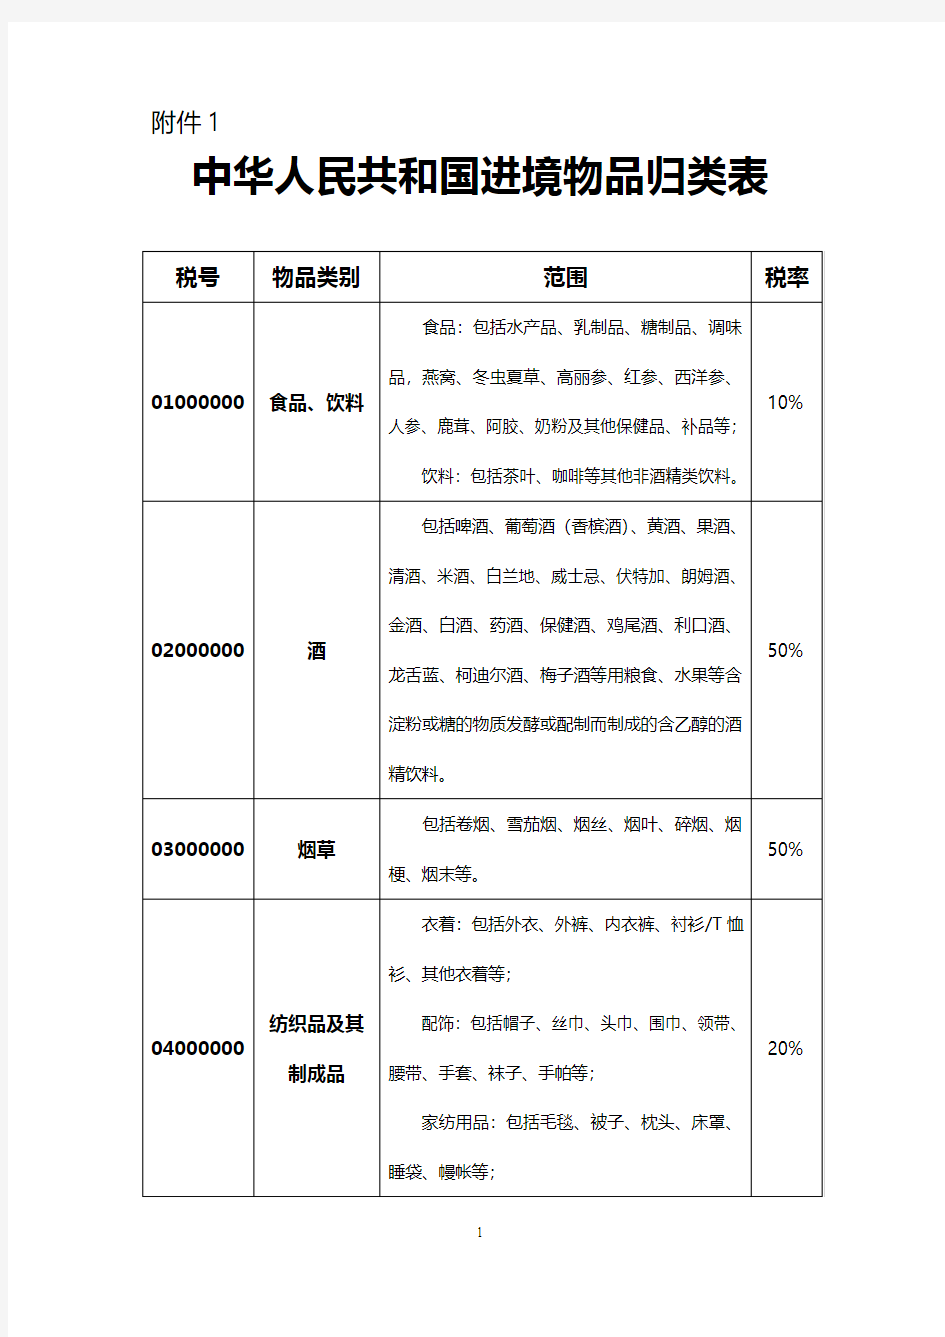 中华人民共和国进境物品行邮税归类表